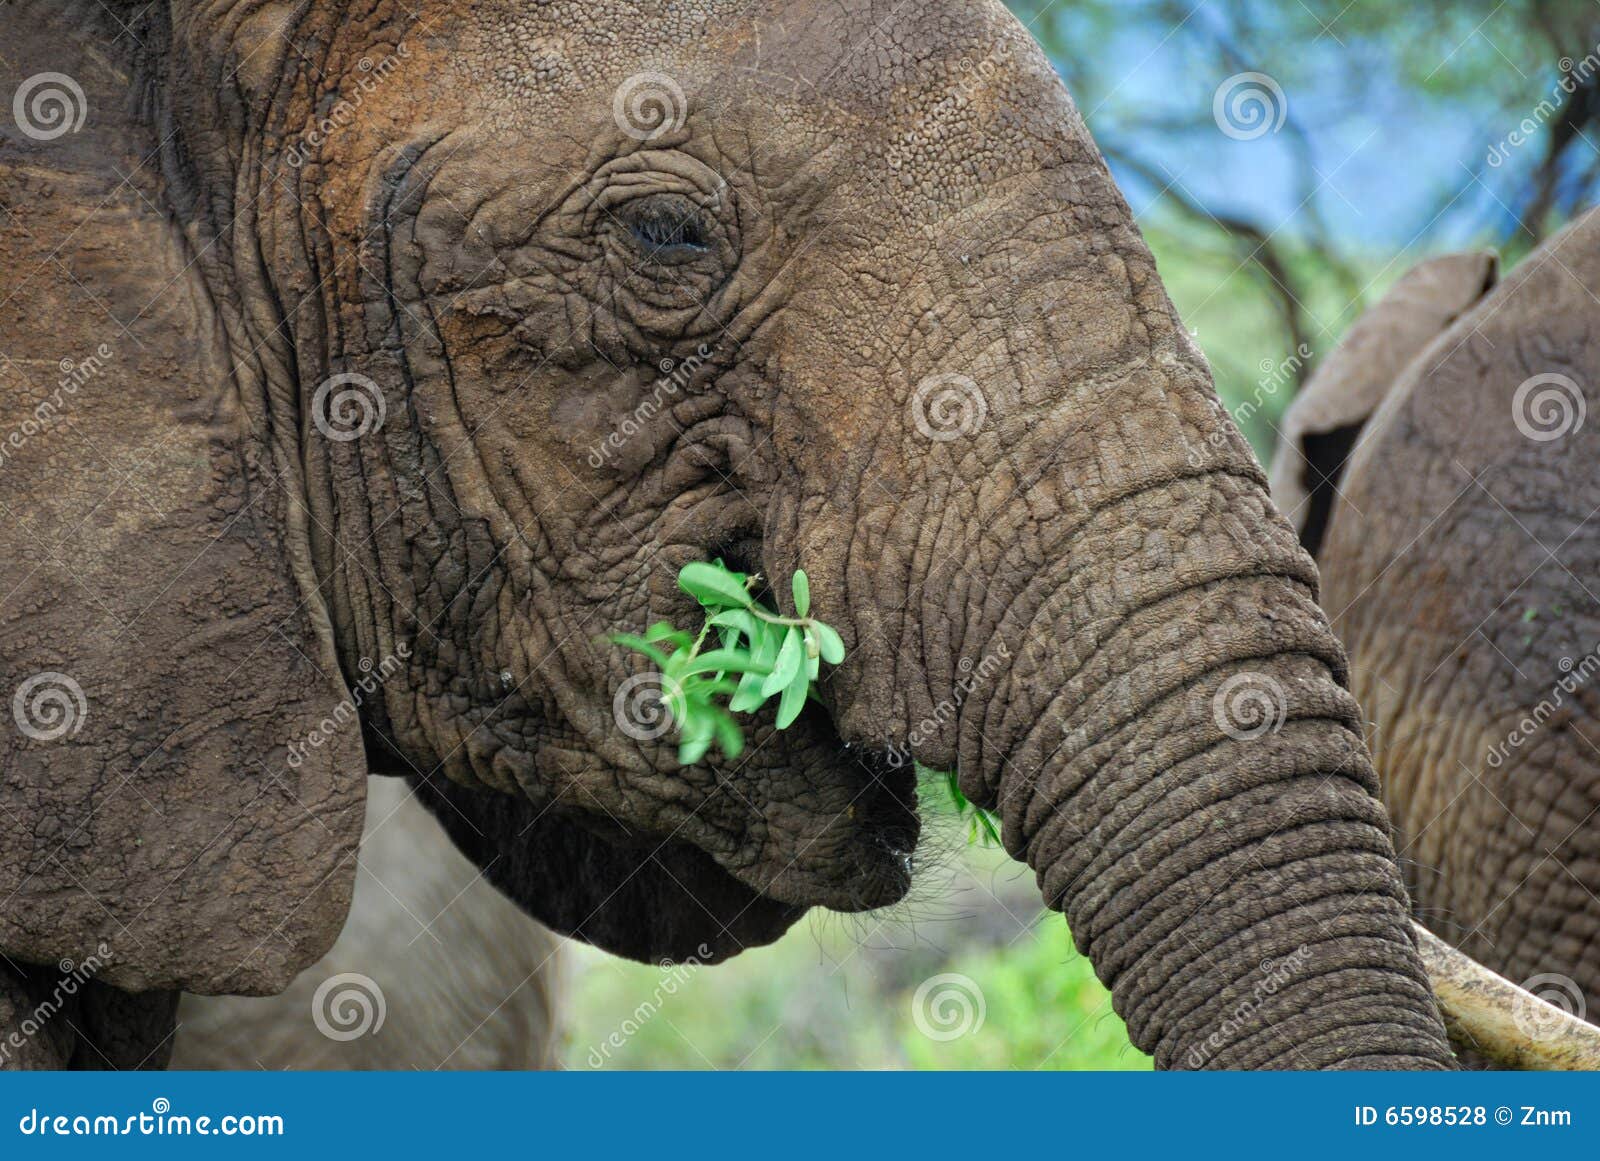 Afrikanischer Elefant. Schließen Sie herauf den afrikanischen Elefanten, der Zweige isst